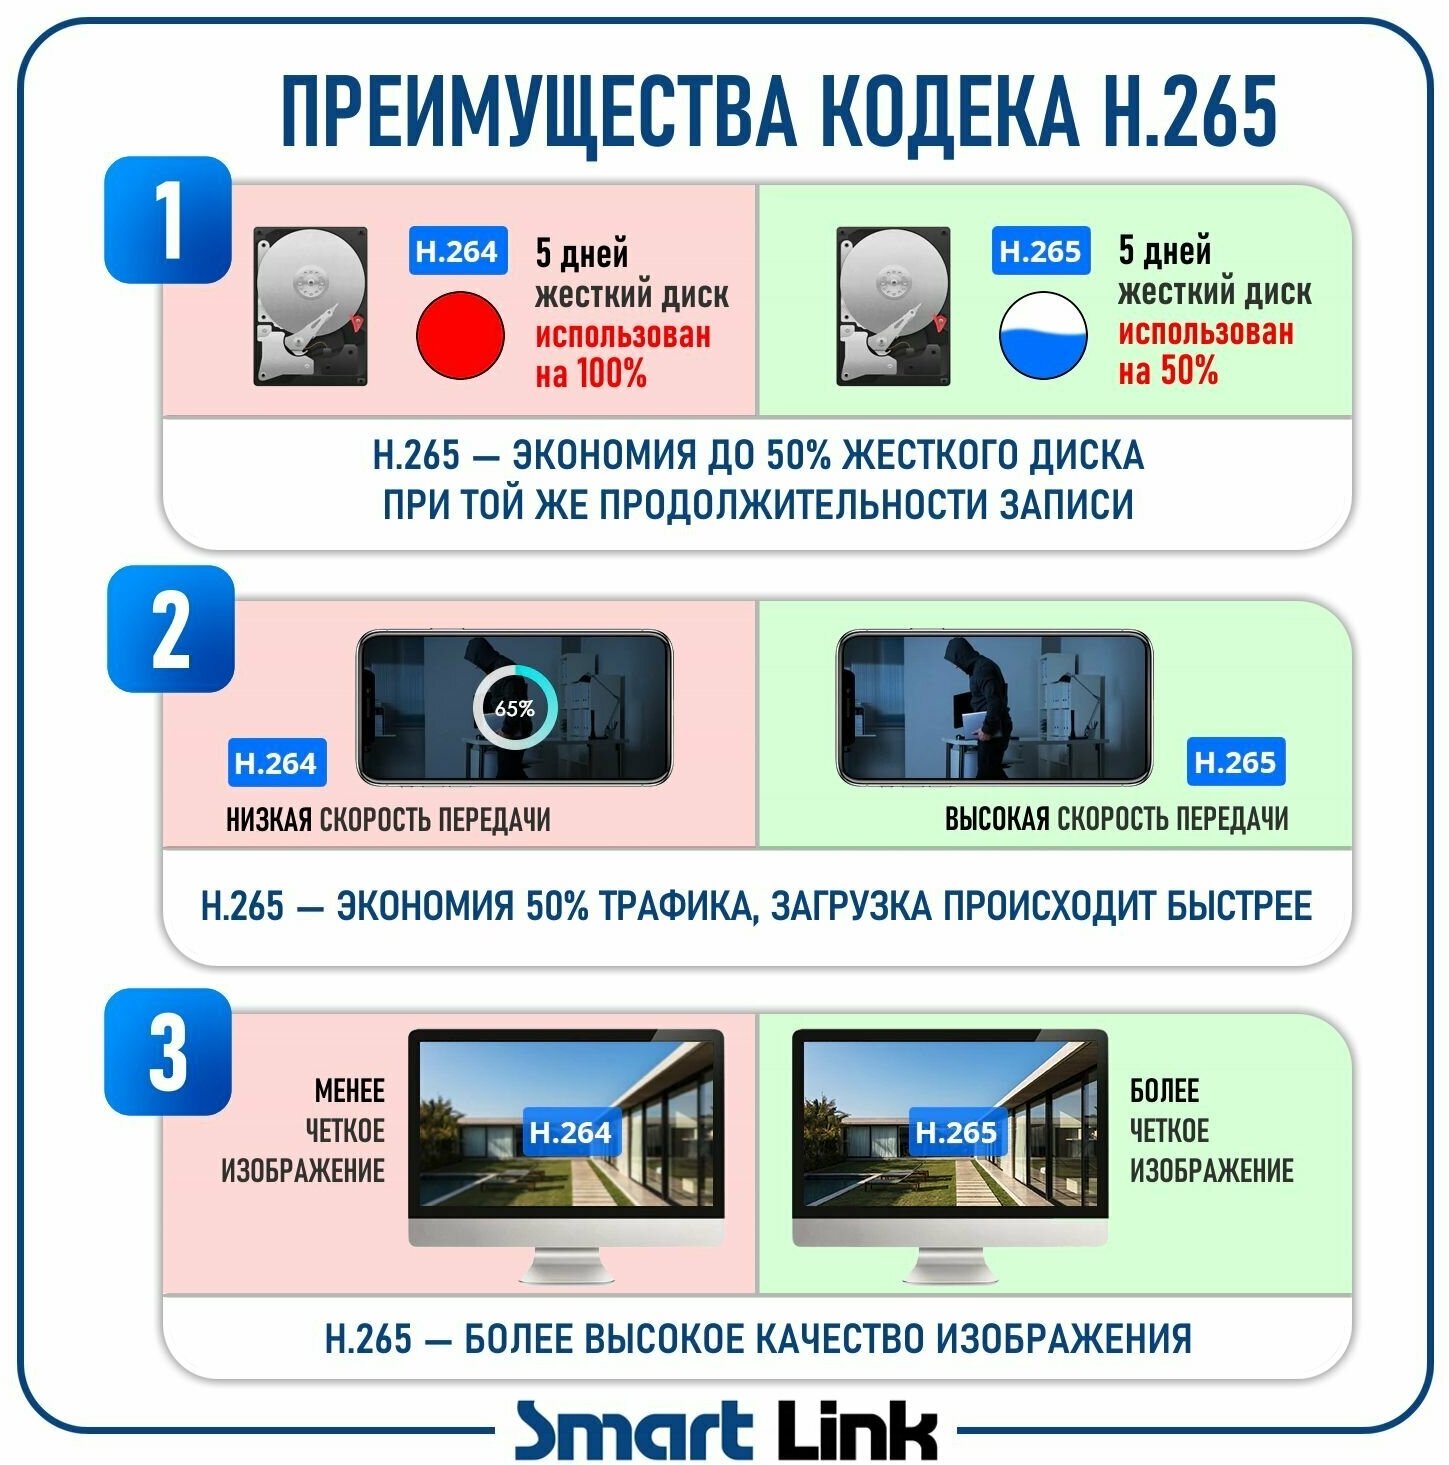 Умная беспроводная 3Мп WiFi камера видеонаблюдения поворотная для дома/ офиса с записью на карту памяти Smart Link SL-W324H